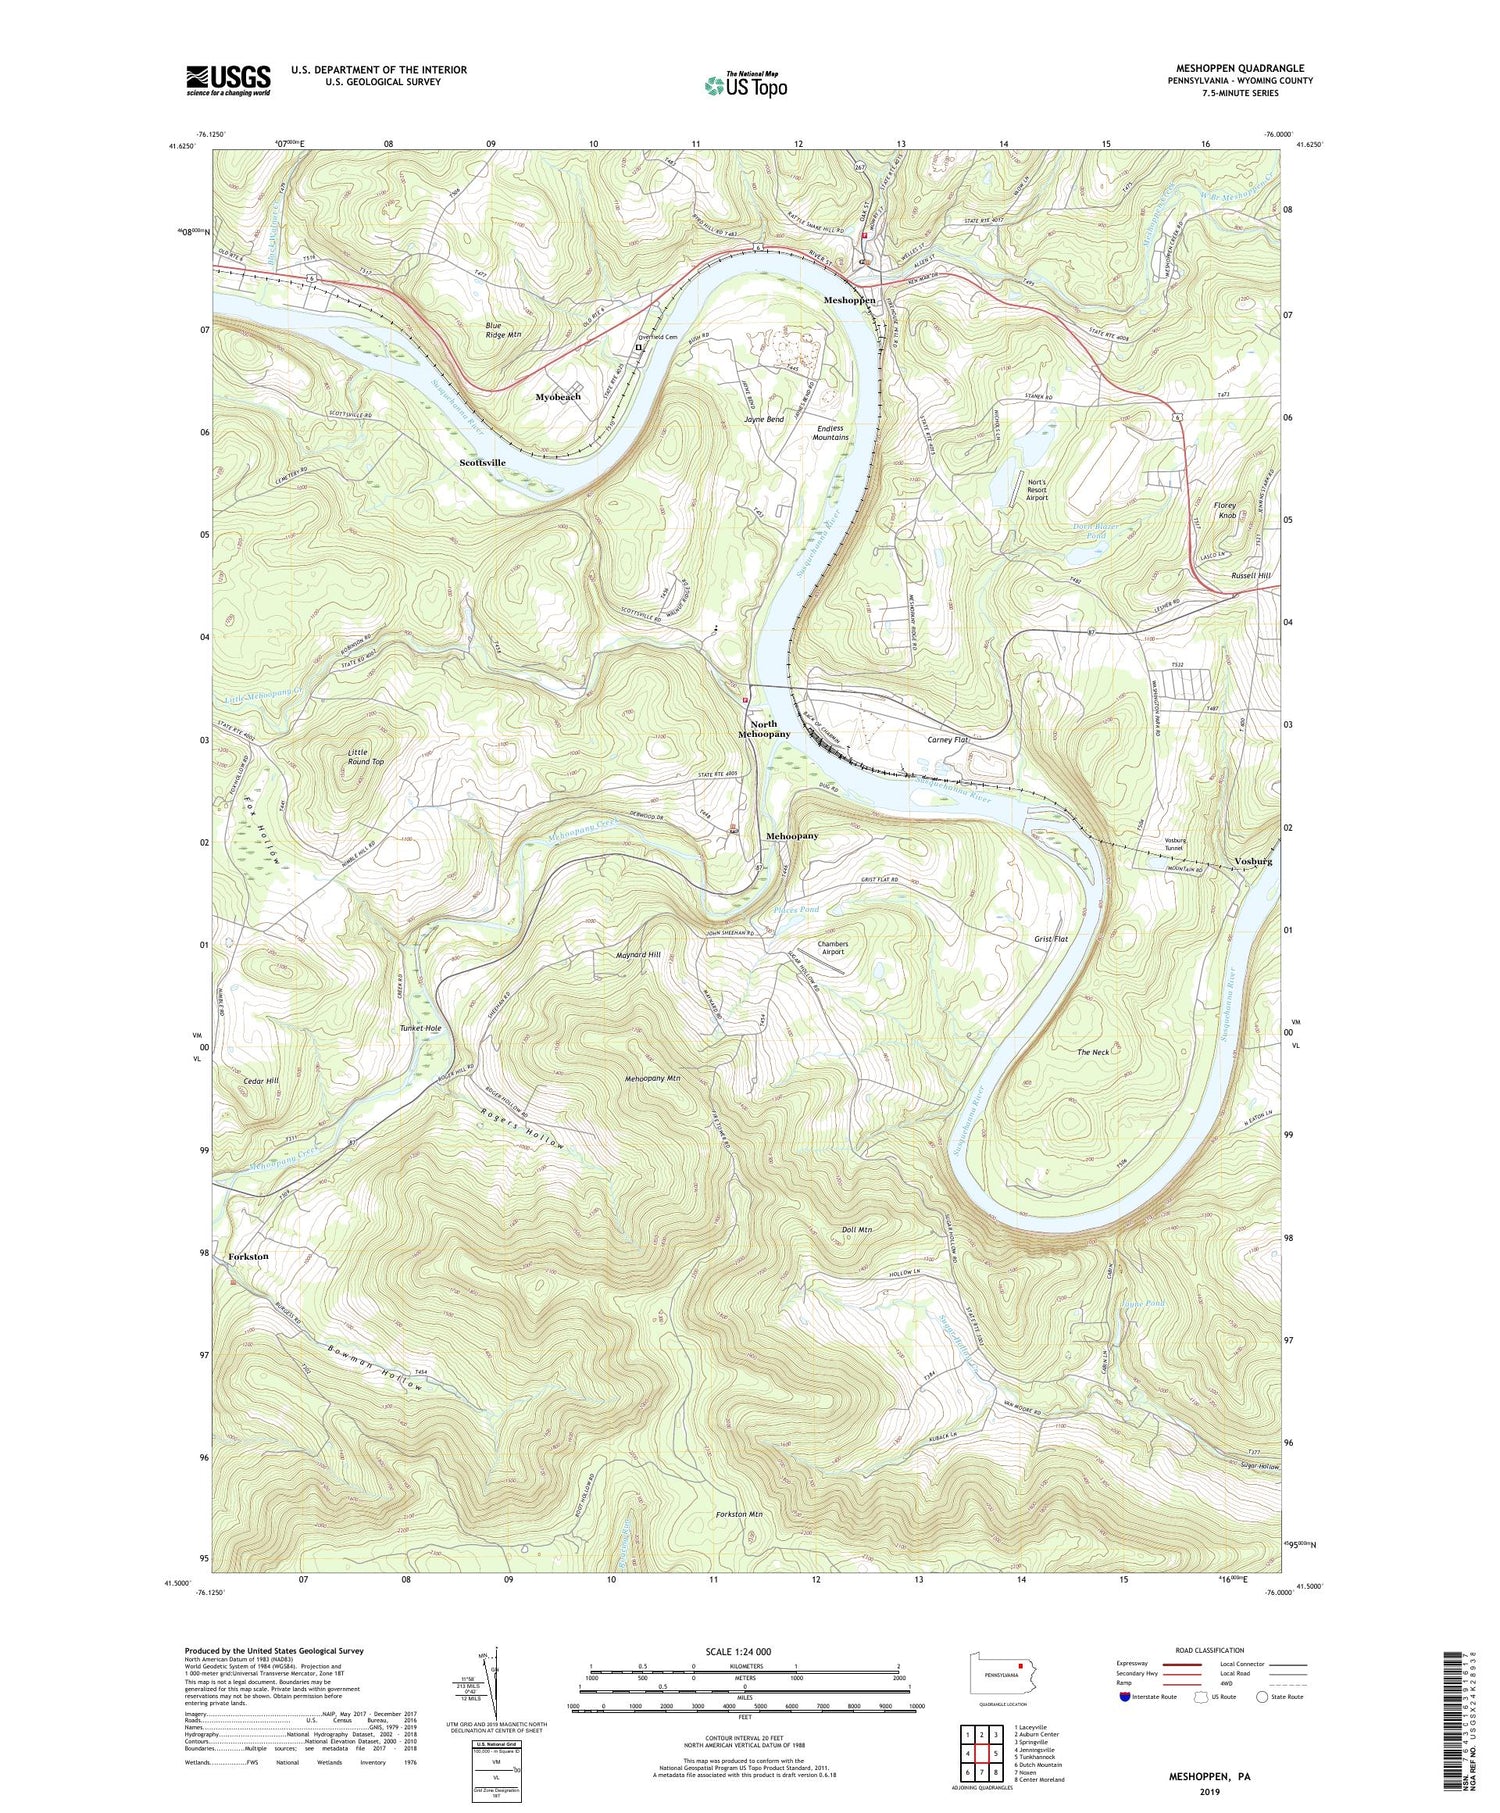 Meshoppen Pennsylvania US Topo Map Image